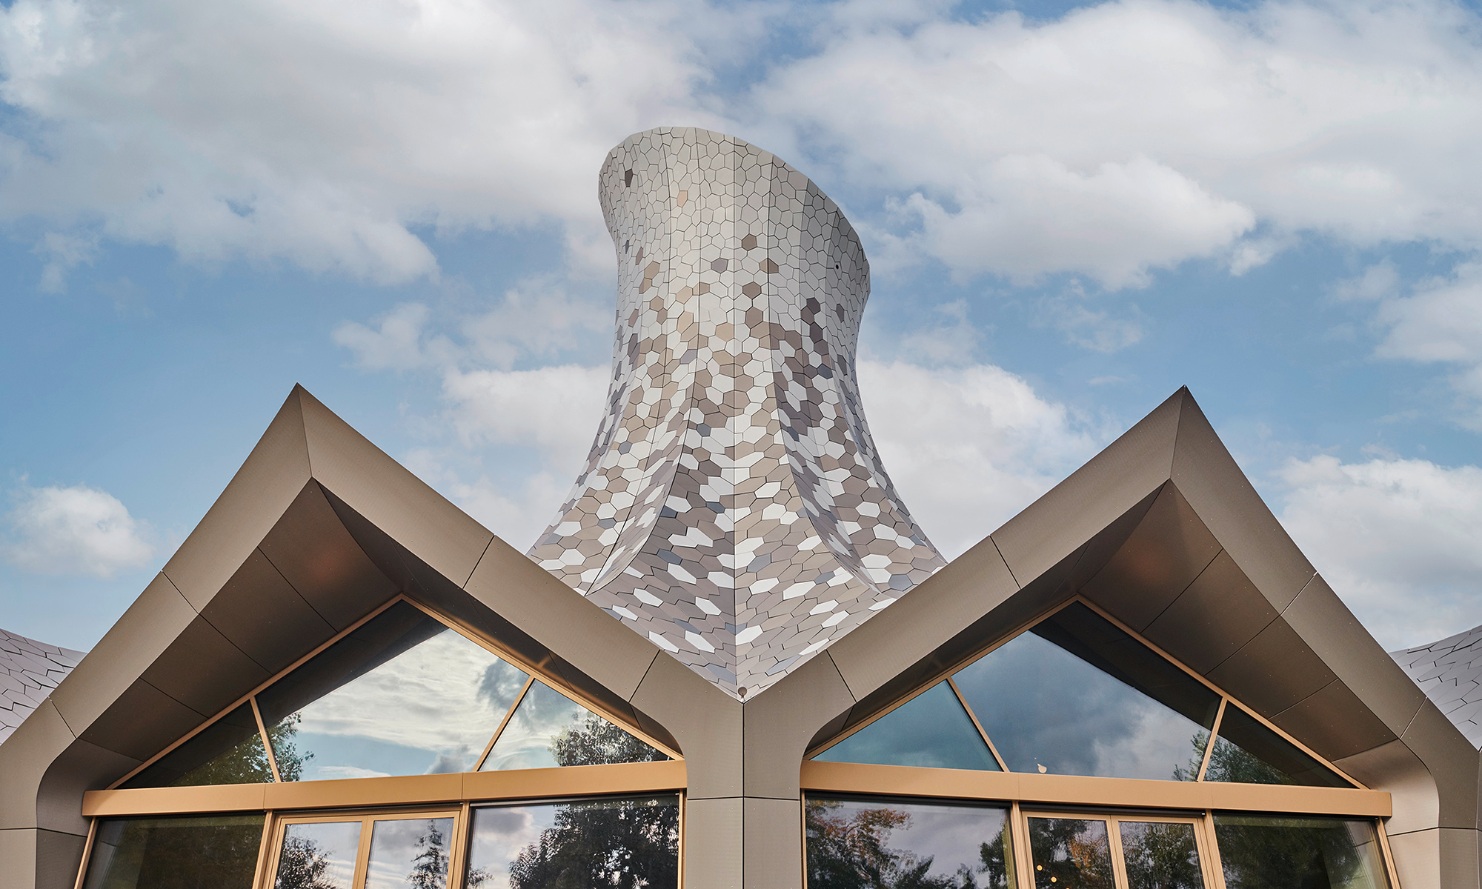 Des écailles métalliques de forme irrégulière recouvrent le toit autoportant, qui est conçu comme une structure pliante.